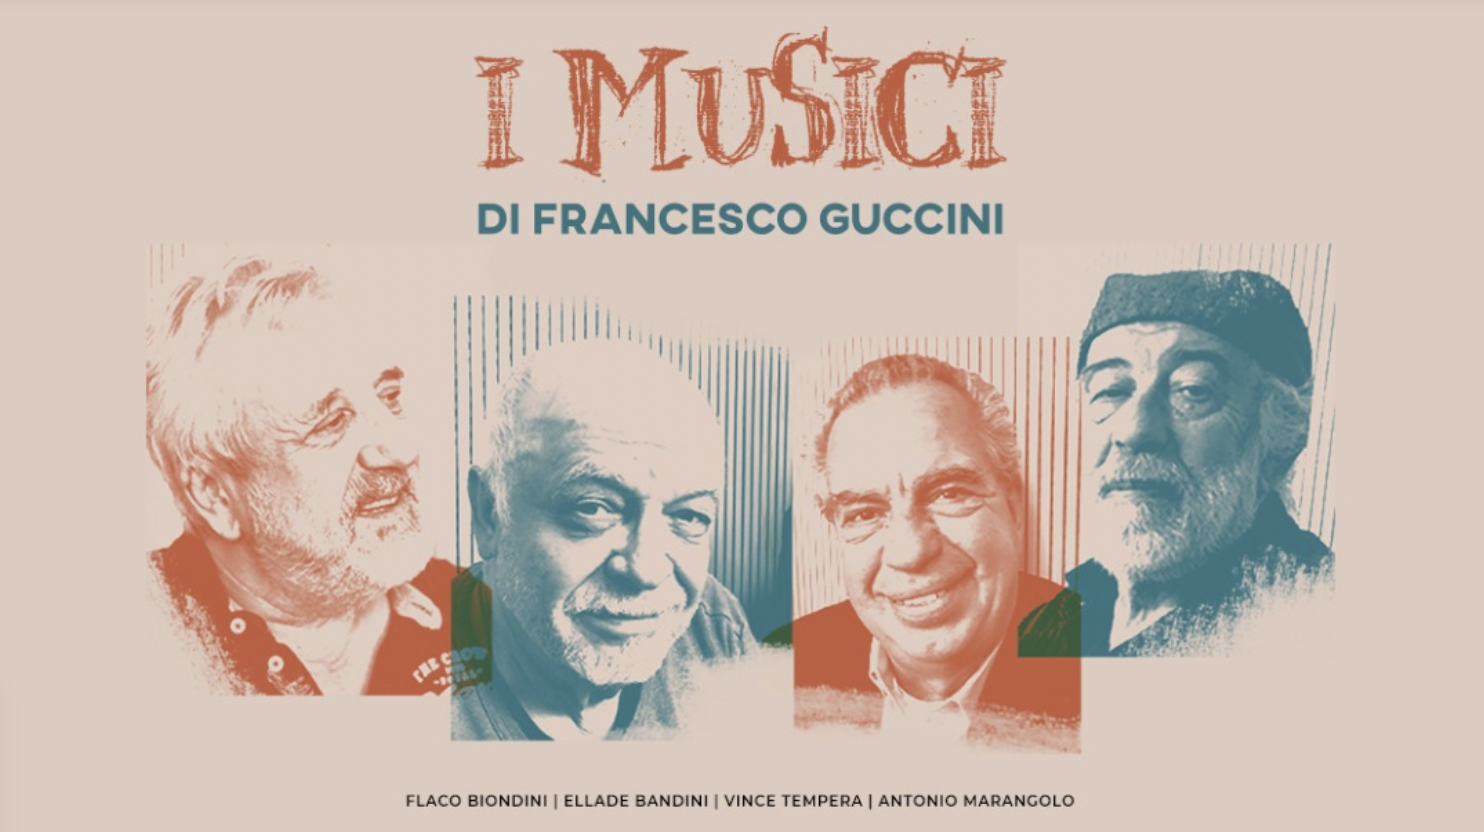 I Musici di Francesco Guccini